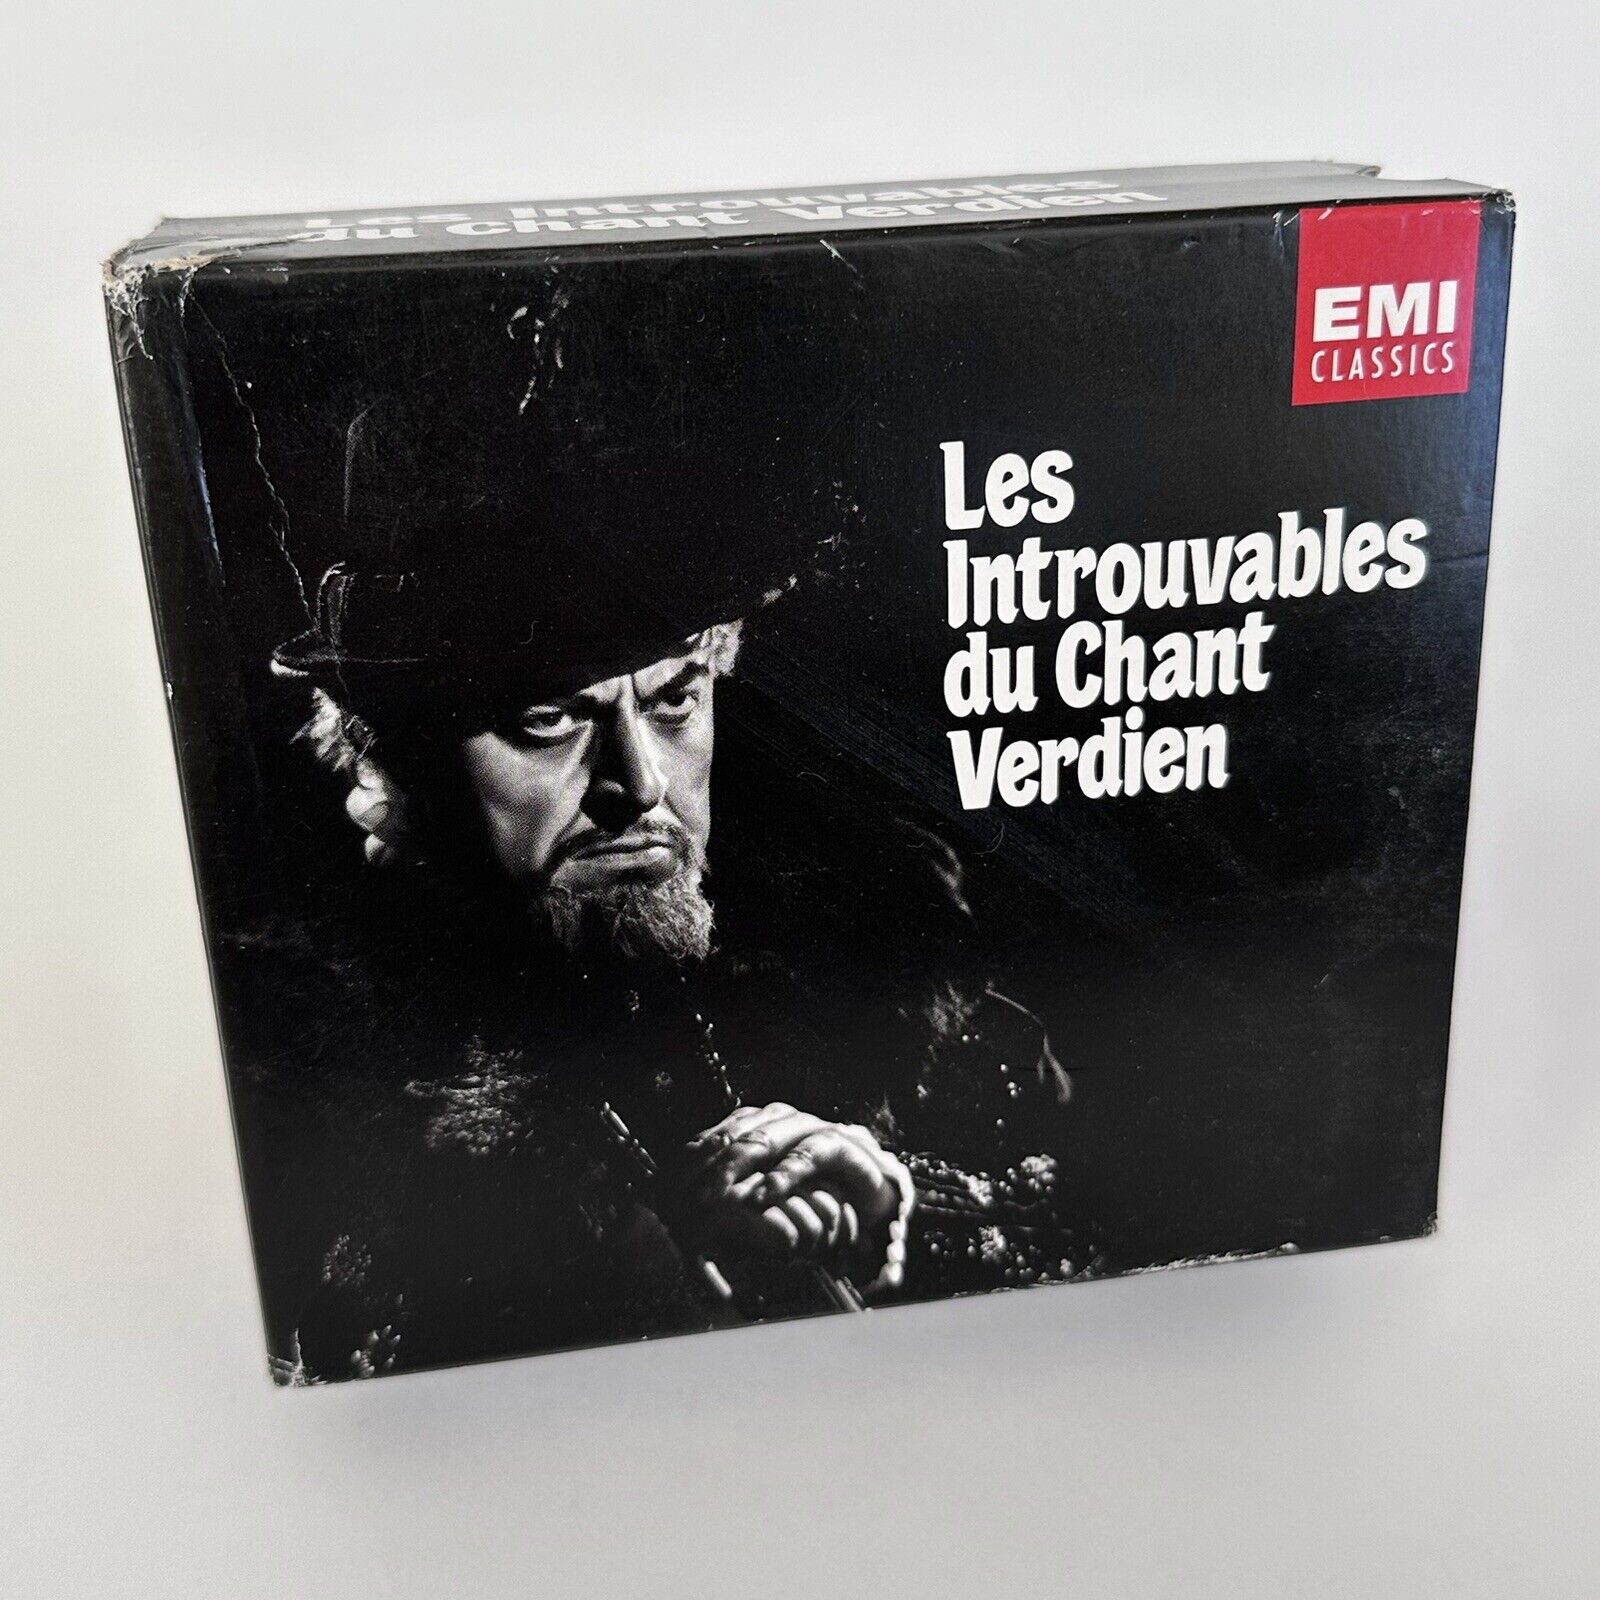 Verdi Les Introuvables du Chant Verdien [EMI 8 CD Box Set] CDs are NEAR MINT